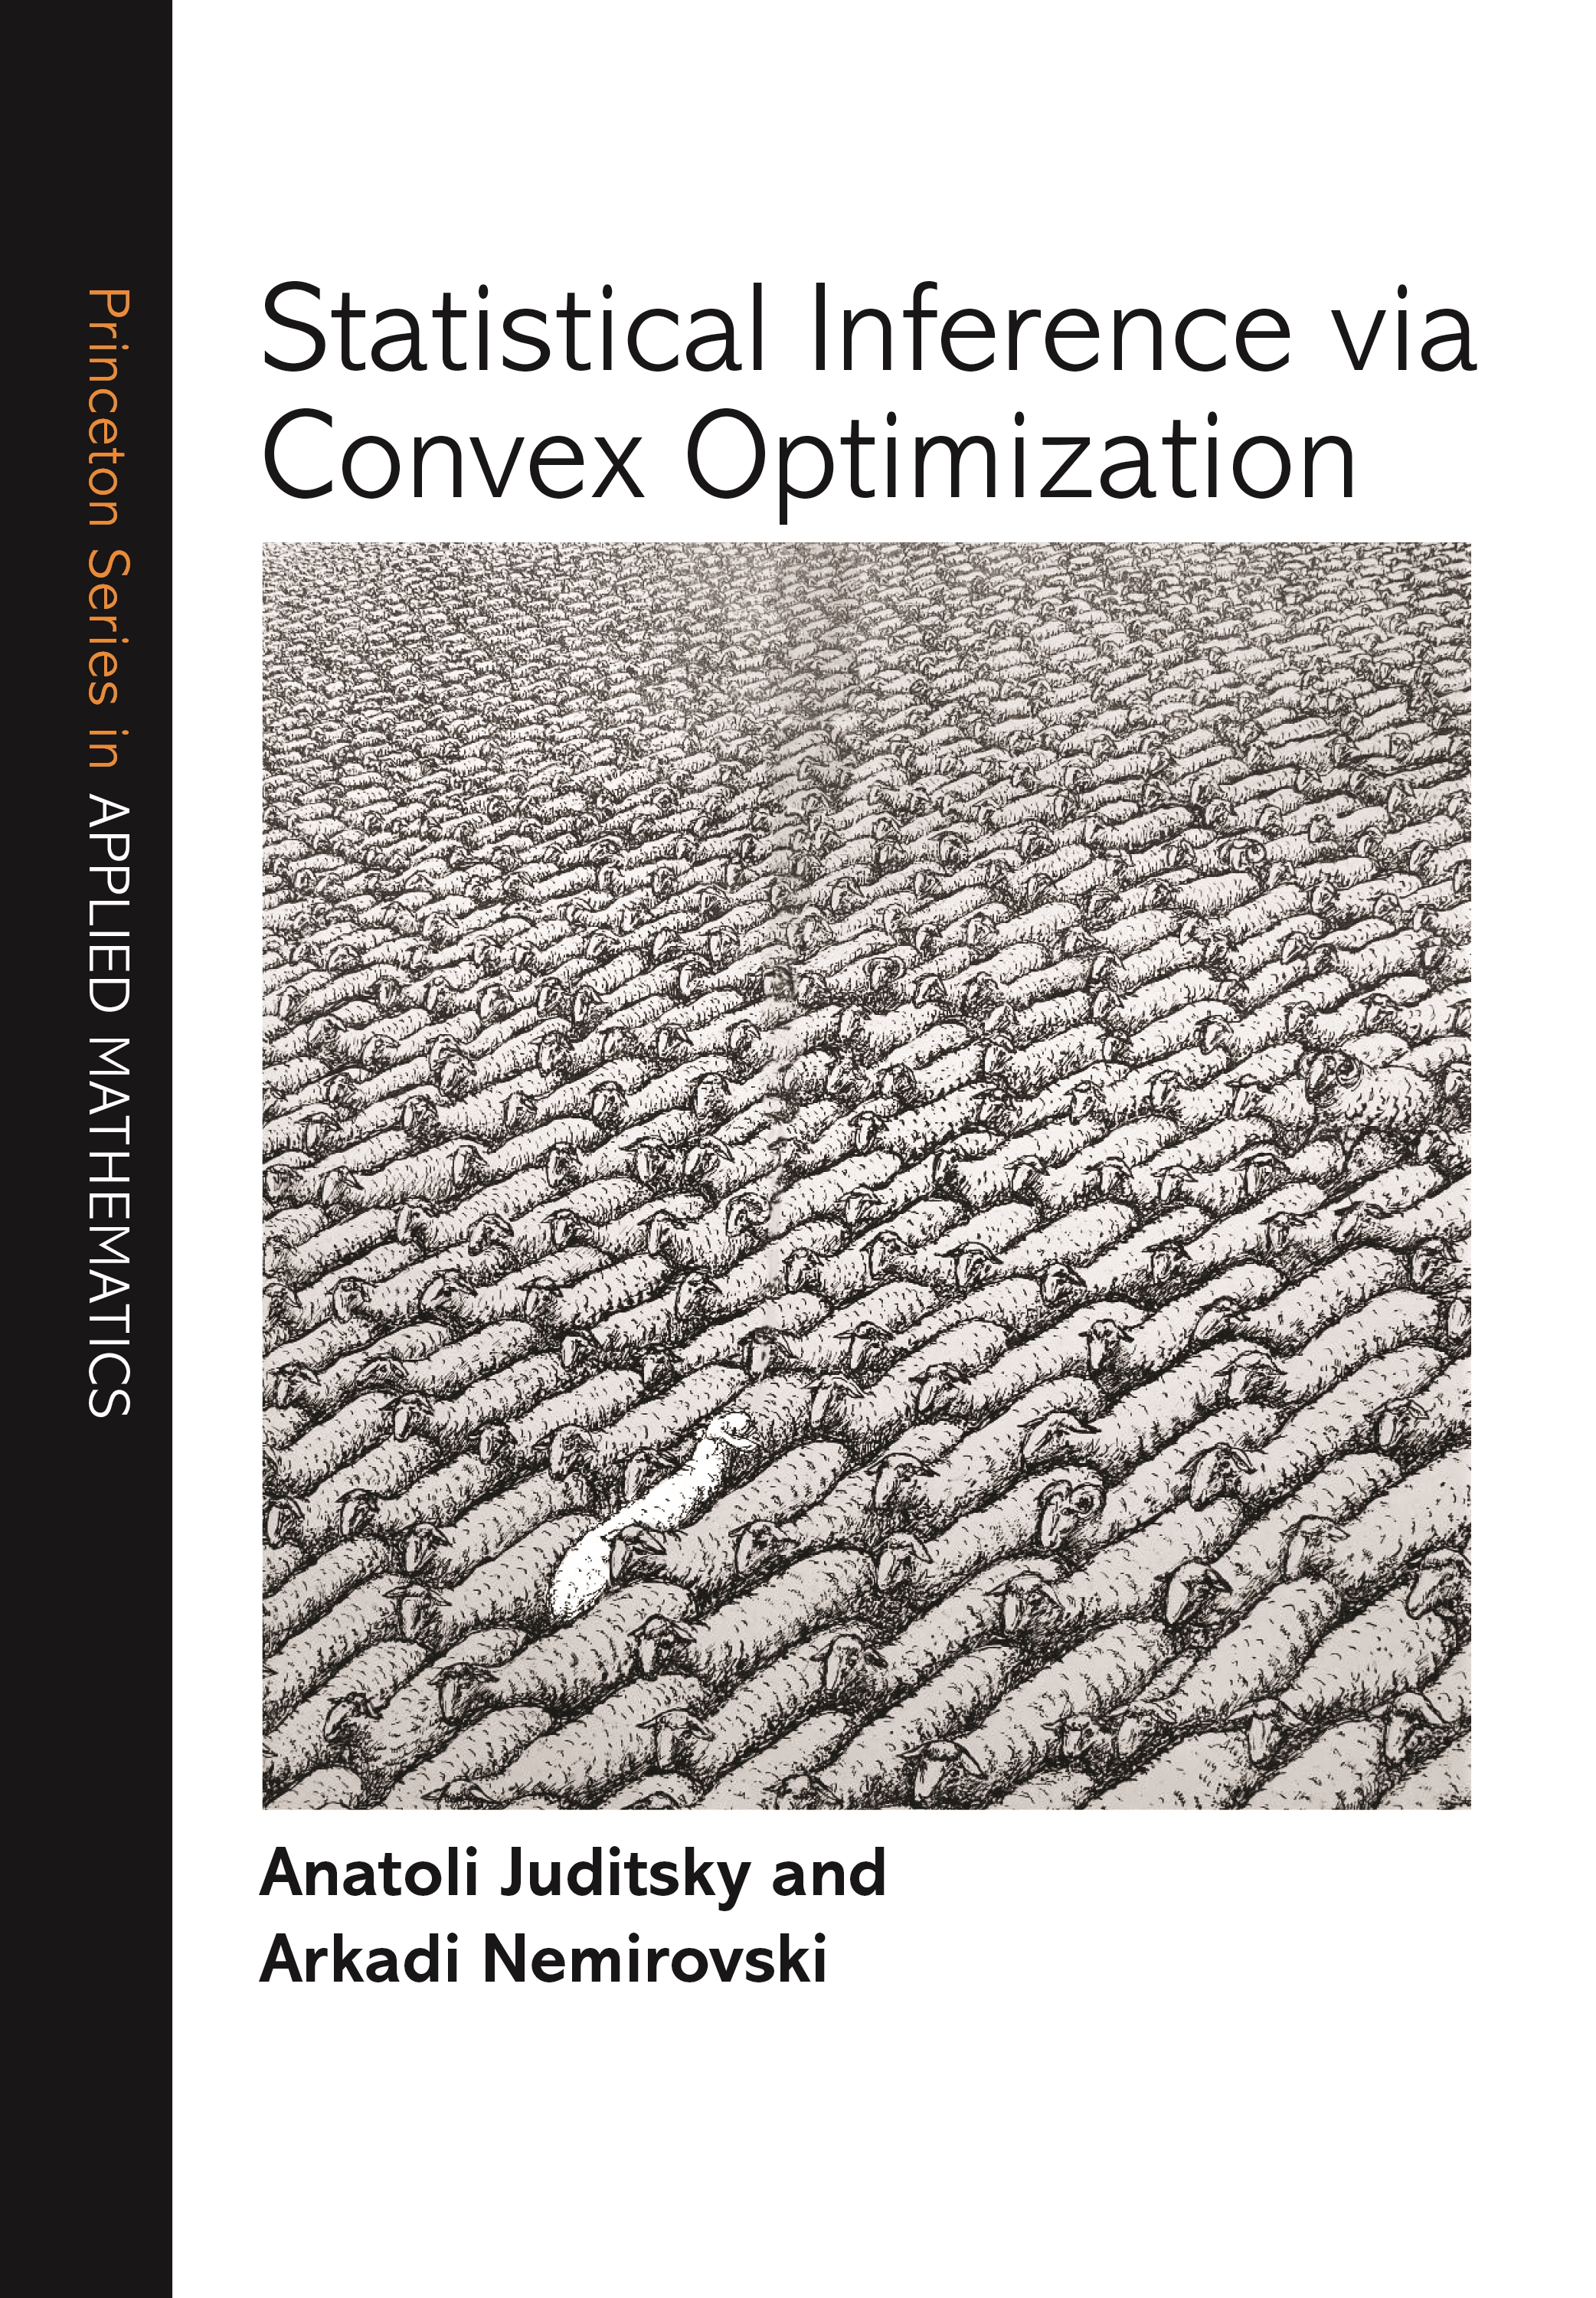 Large-Scale Convex Optimization: Algorithms & Analyses via